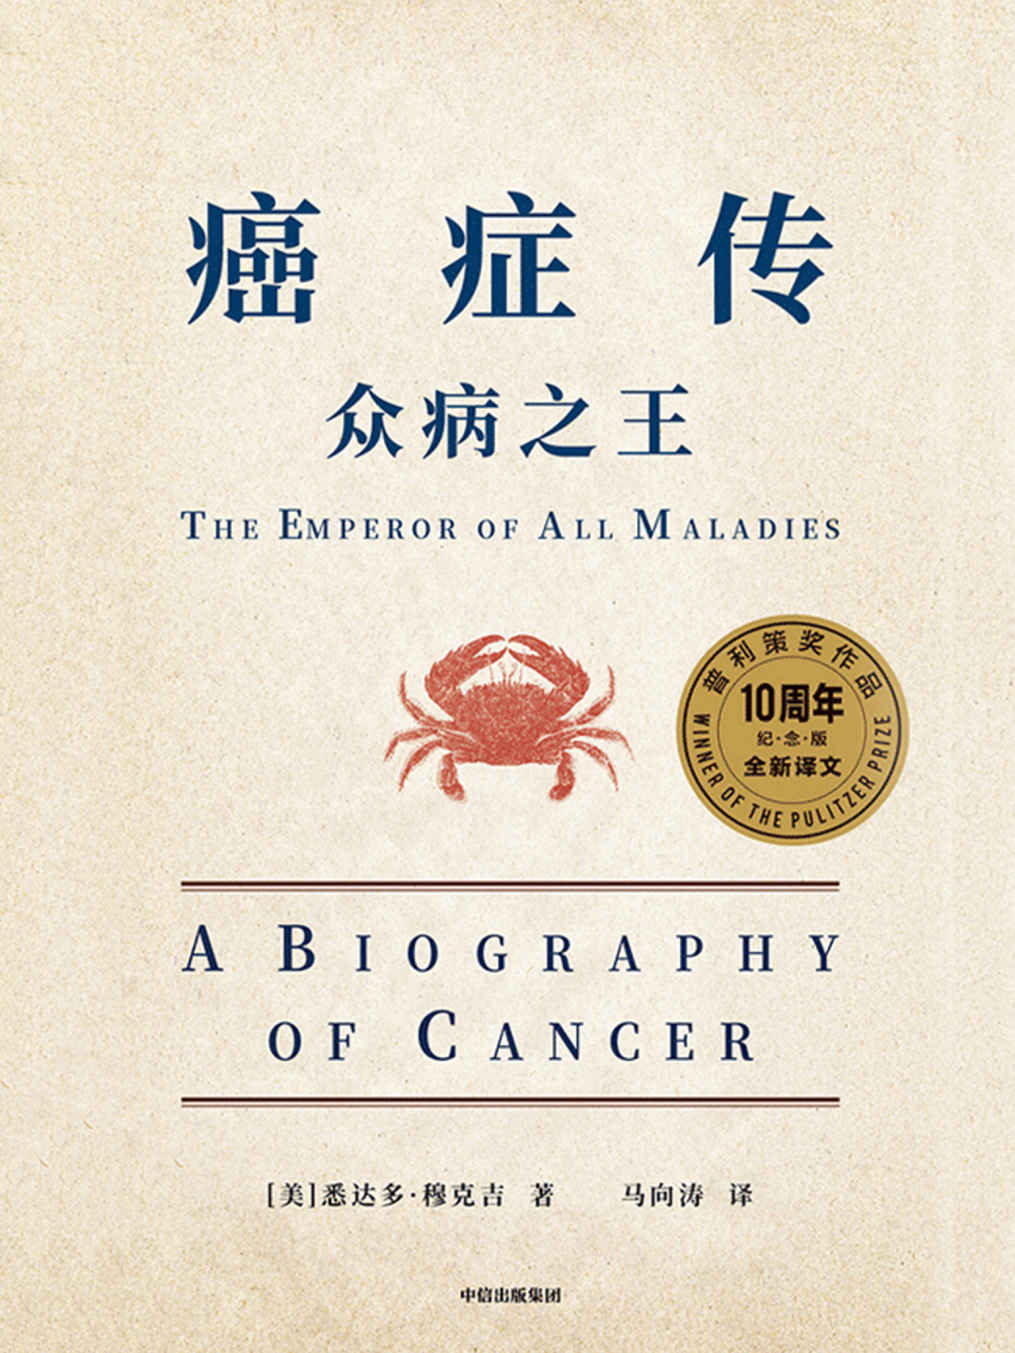 《众病之王:癌症传》-azw3,mobi,epub,pdf,txt,kindle电子书免费下载